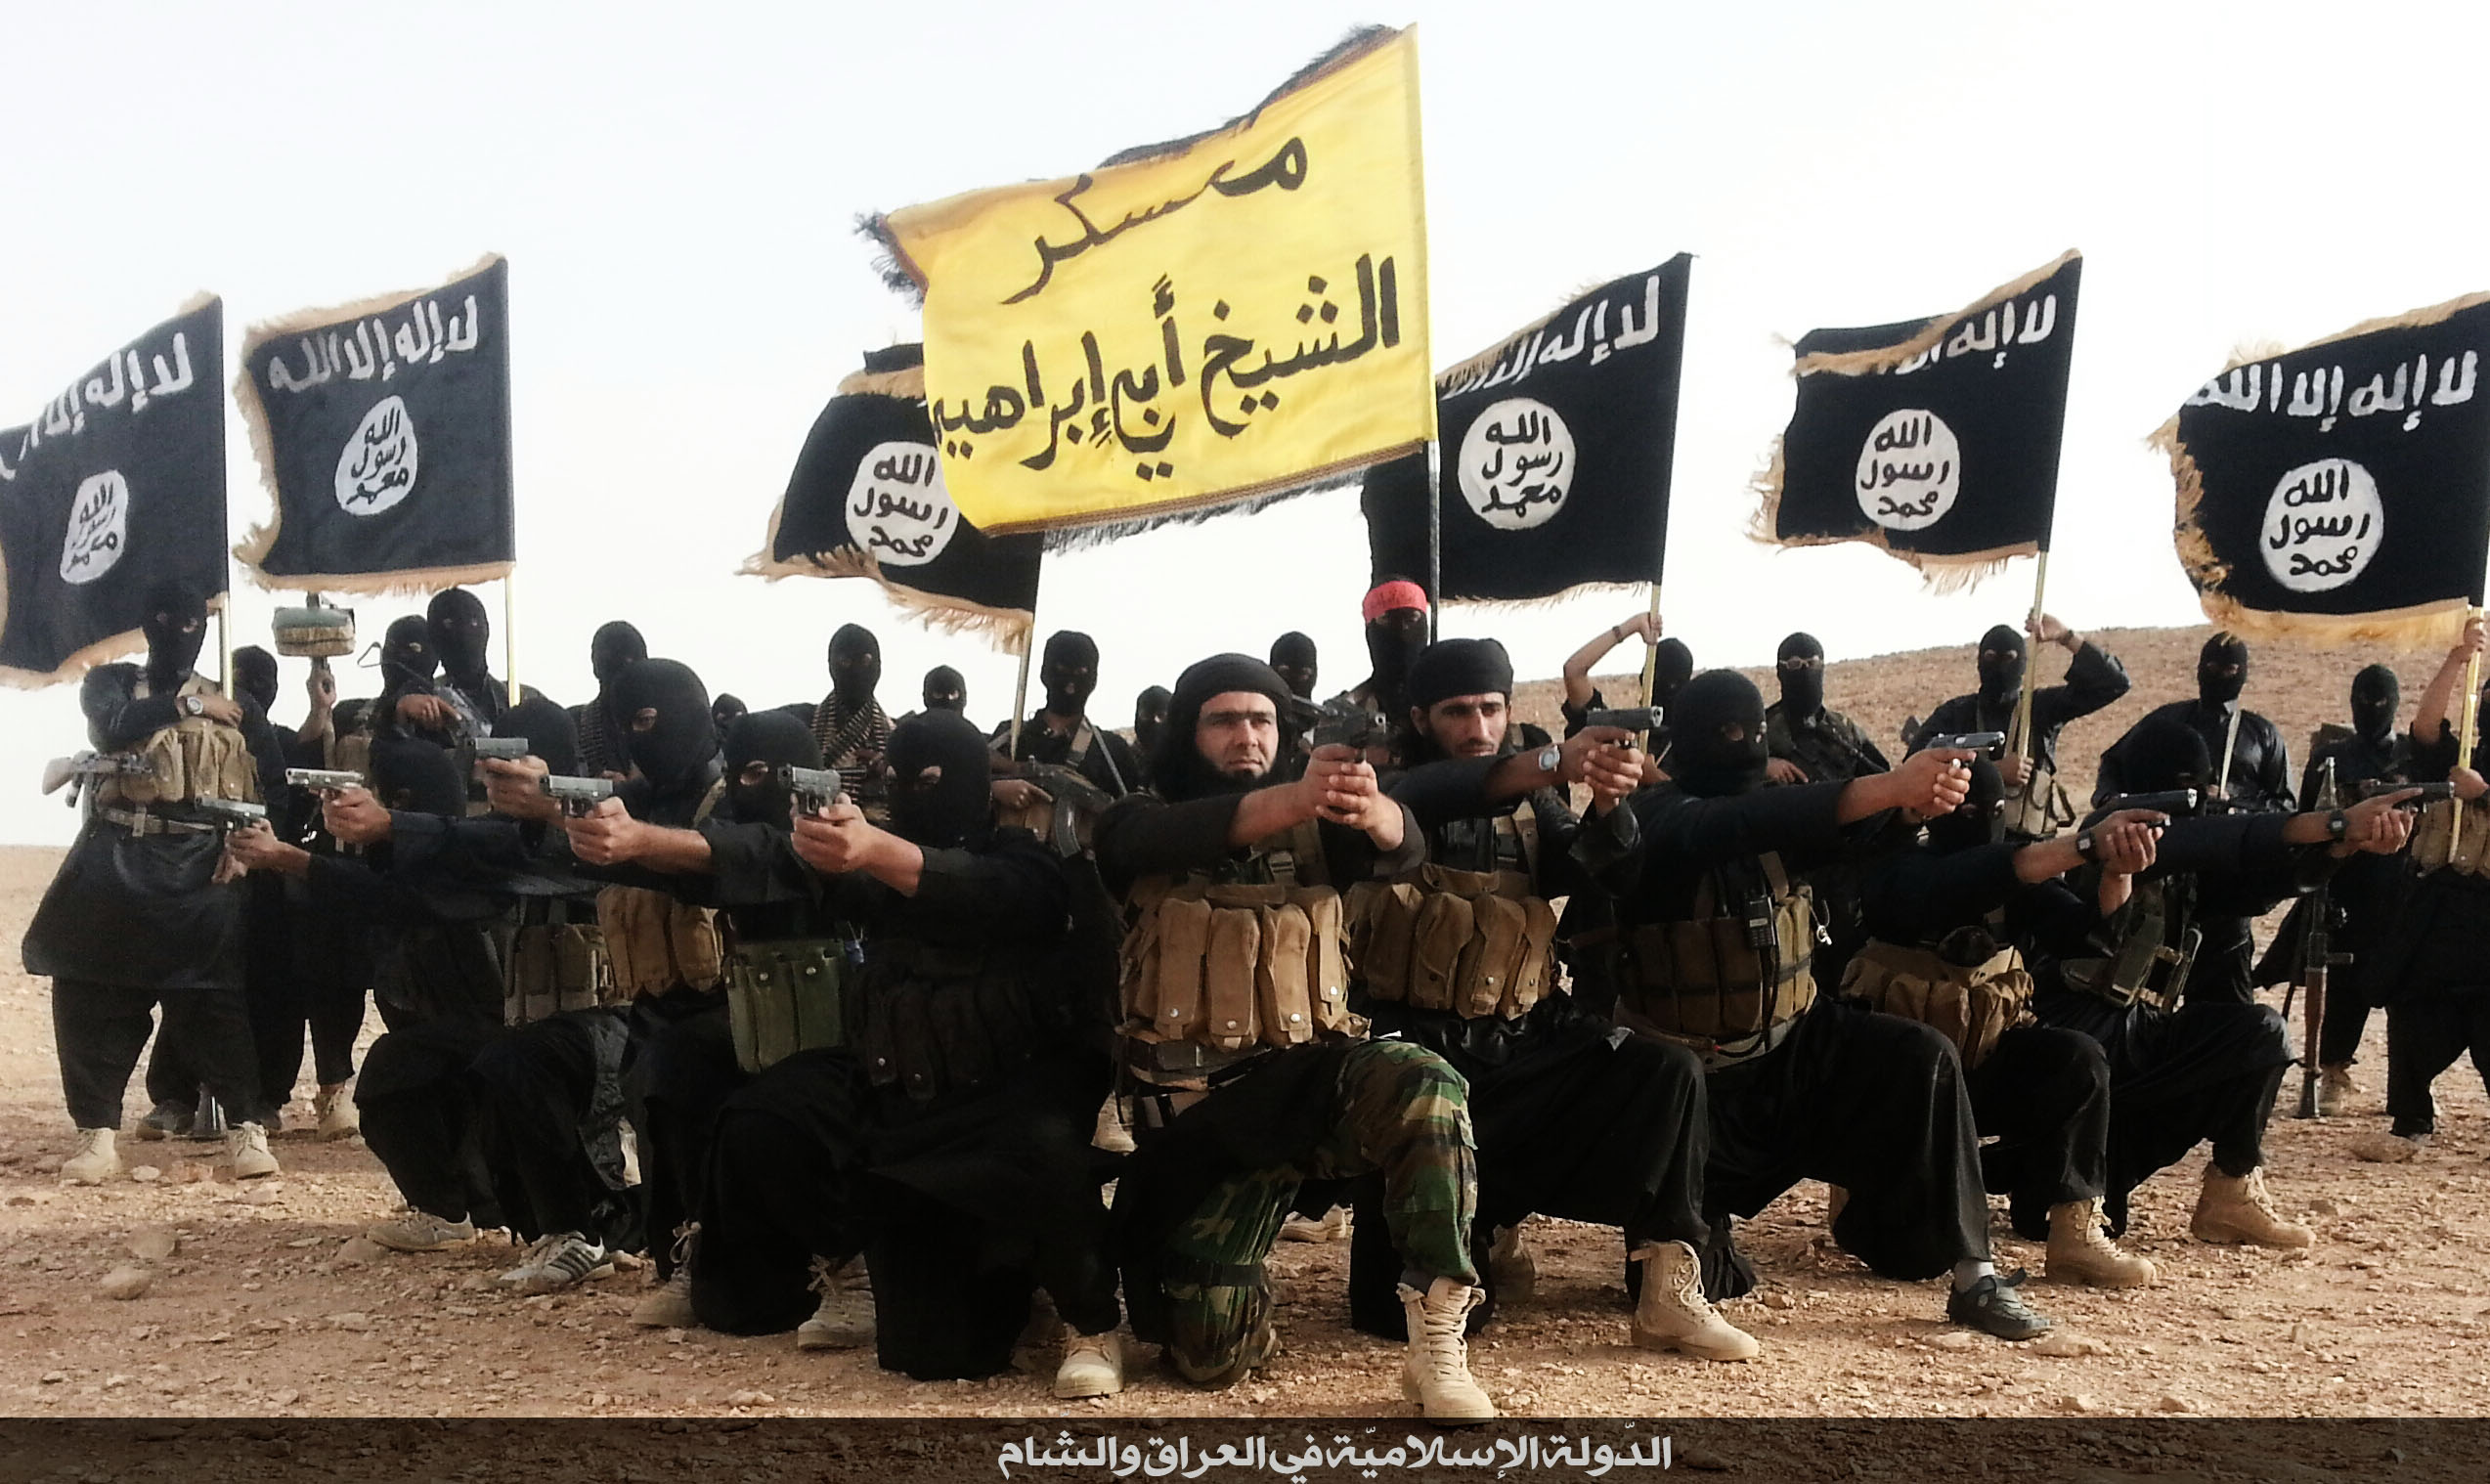 Игил группировка террористов. Флаг ИГИЛ. Исламские террористические группировки.